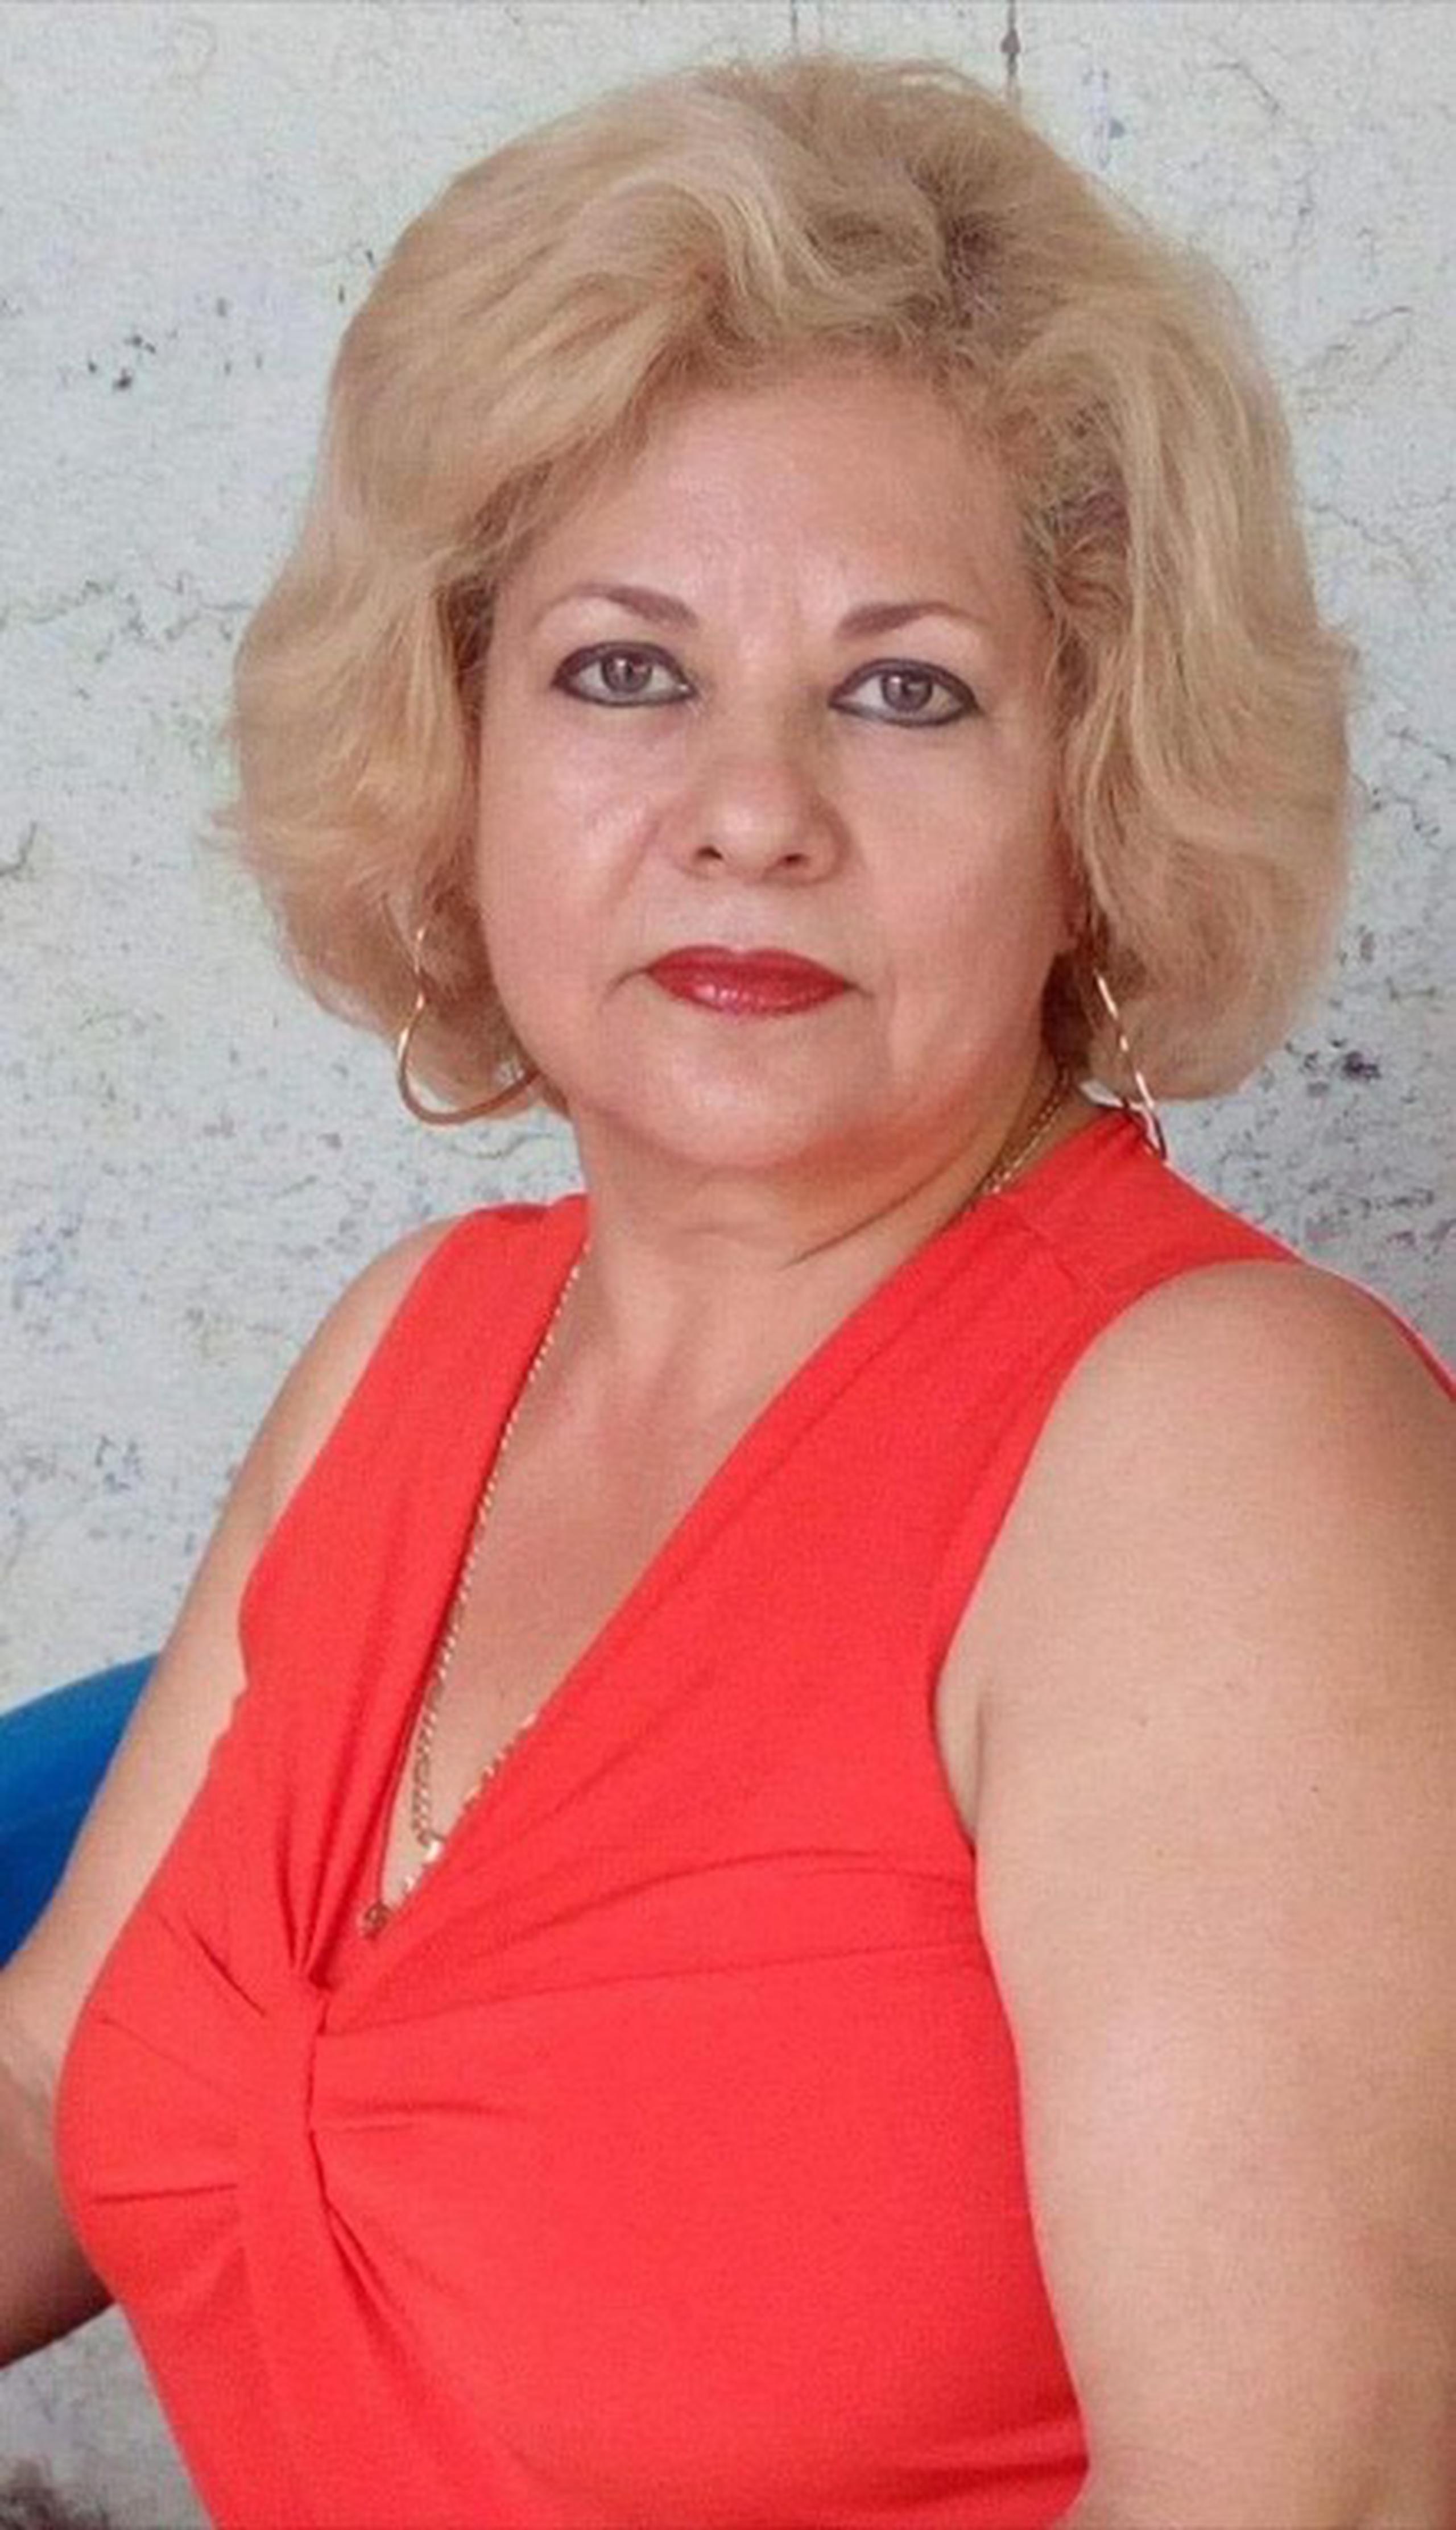 Fotografía cedida por el Negociado Federal de Investigaciones (FBI, en inglés) donde aparece la latina María del Carmen López, de 63 años, que fue secuestrada de una vivienda en Pueblo Nuevo, en el estado mexicano de Colima, el pasado 9 de febrero, según dijo el FBI en un comunicado de prensa. (EFE/FBI /SOLO USO EDITORIAL/NO VENTAS/SOLO DISPONIBLE PARA ILUSTRAR LA NOTICIA QUE ACOMPAÑA/CRÉDITO OBLIGATORIO)